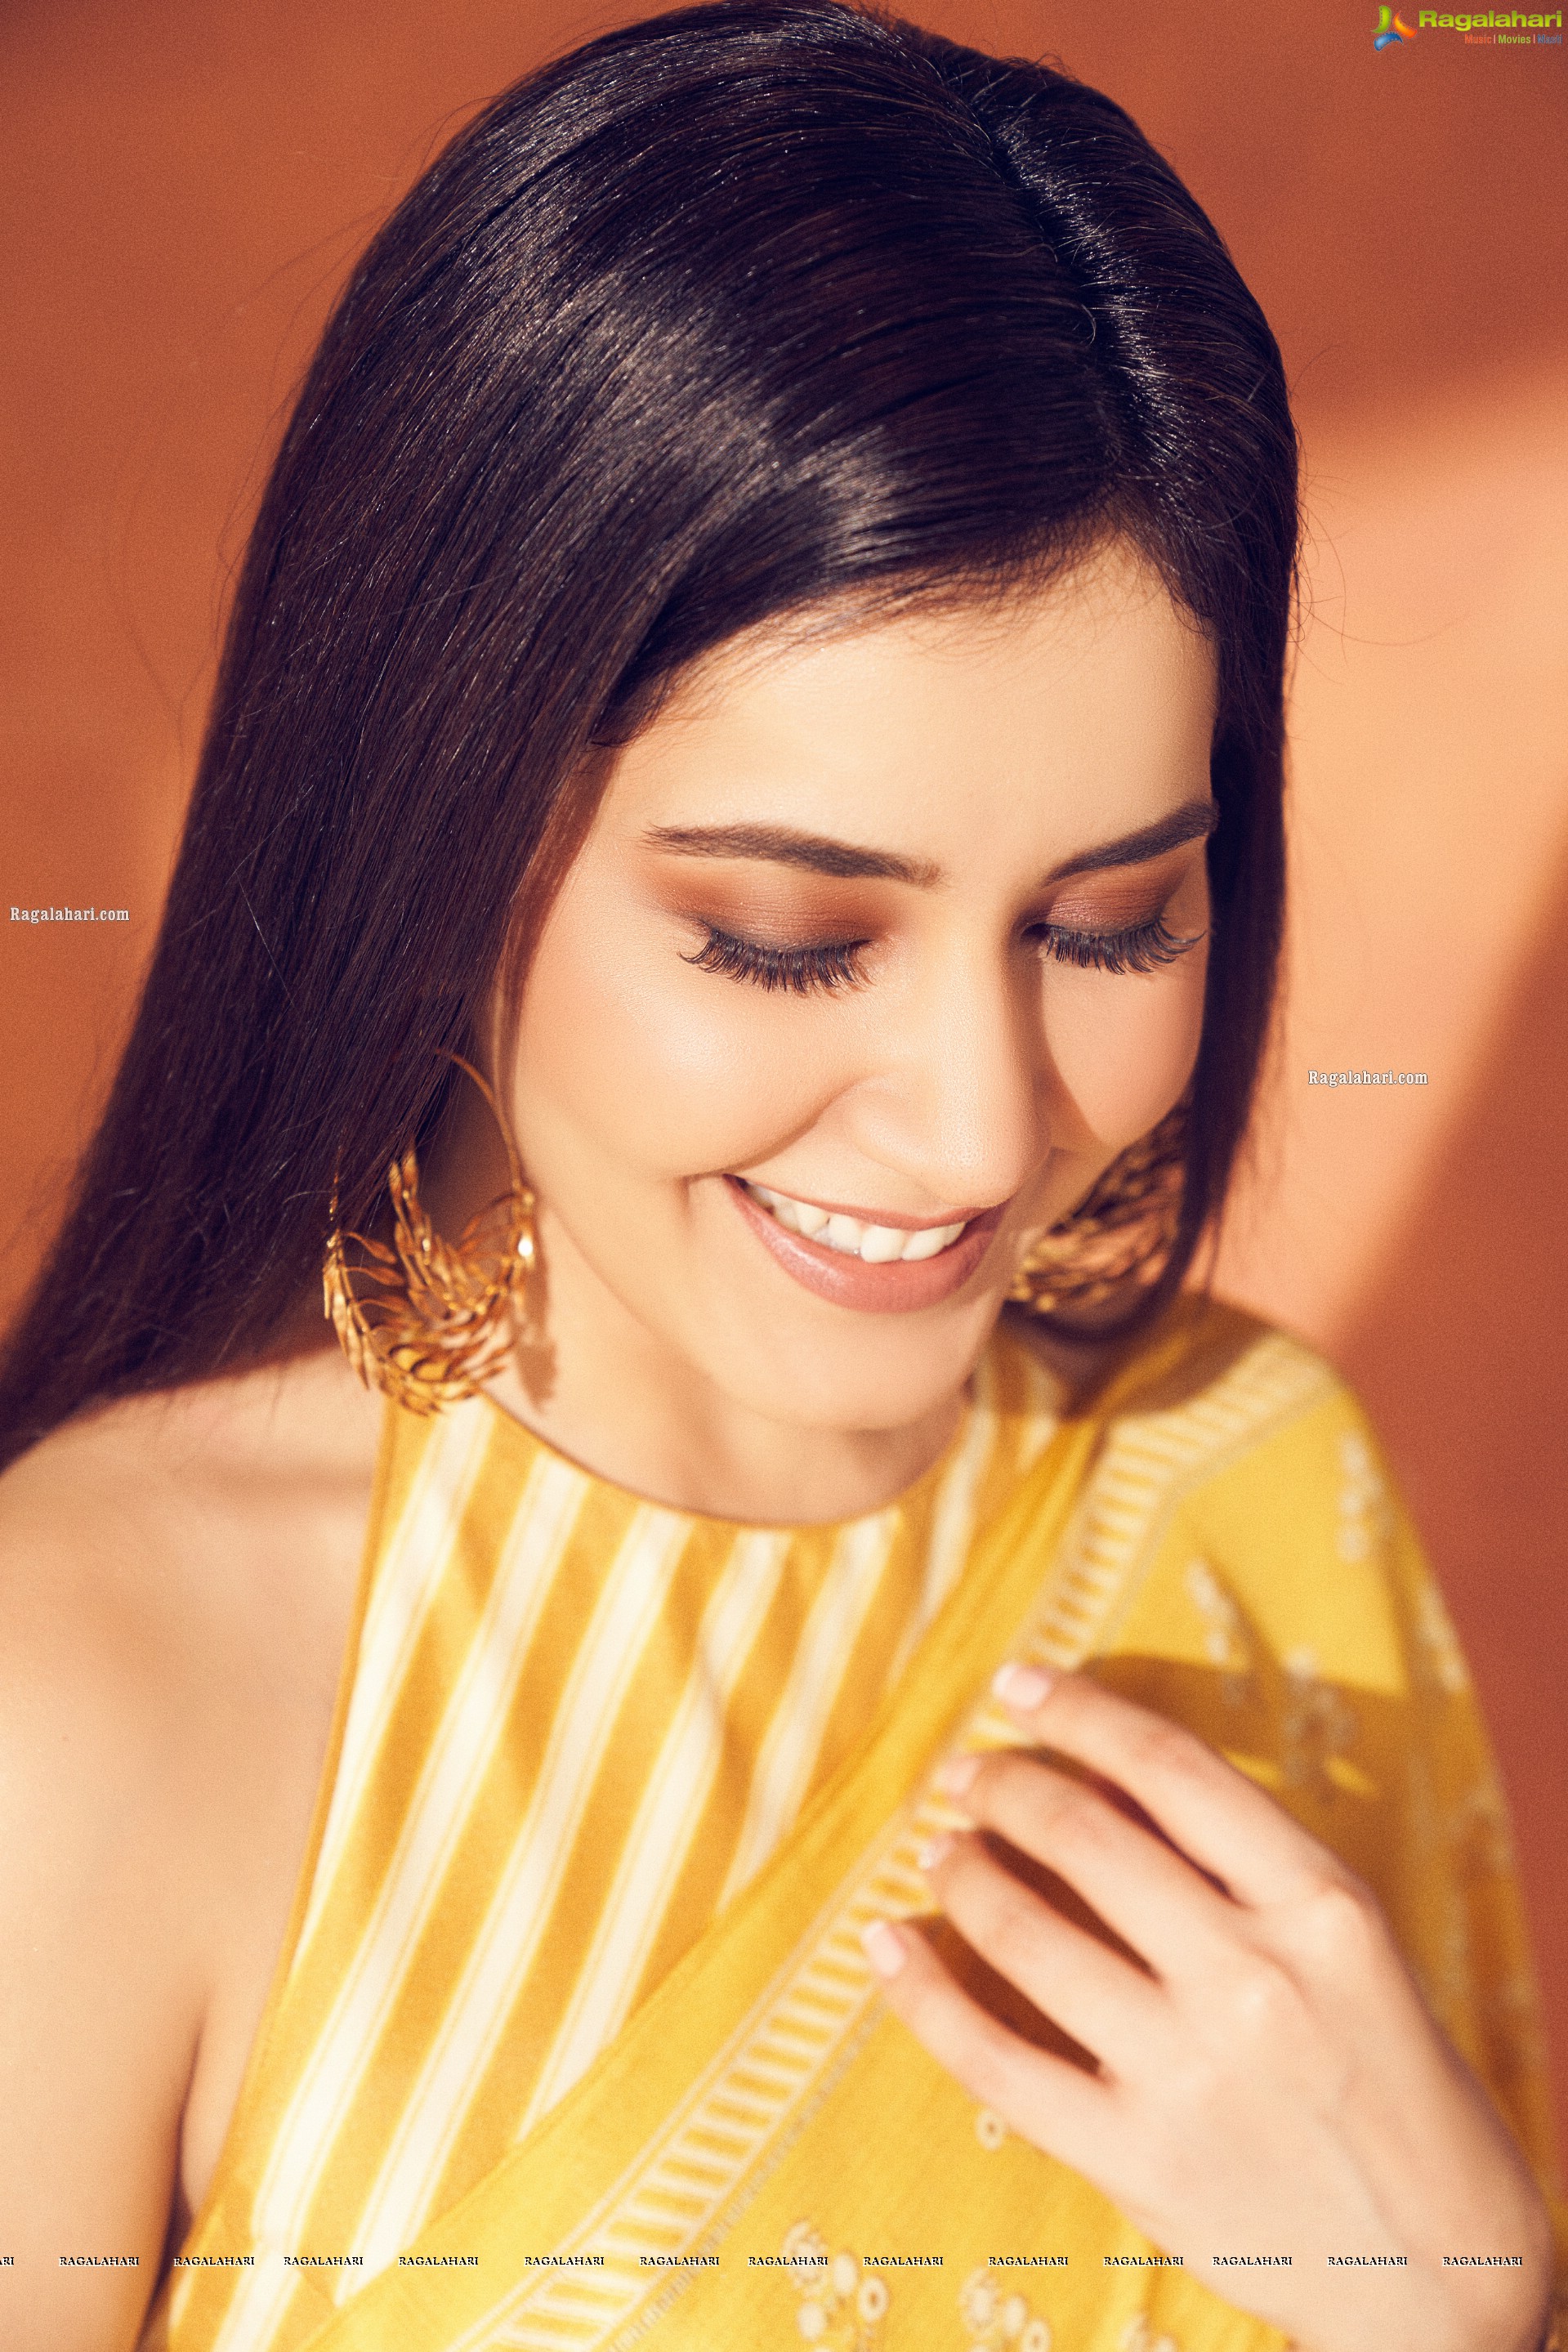 Raashi Khanna Wears a Sheer Yellow Saree - HD Gallery